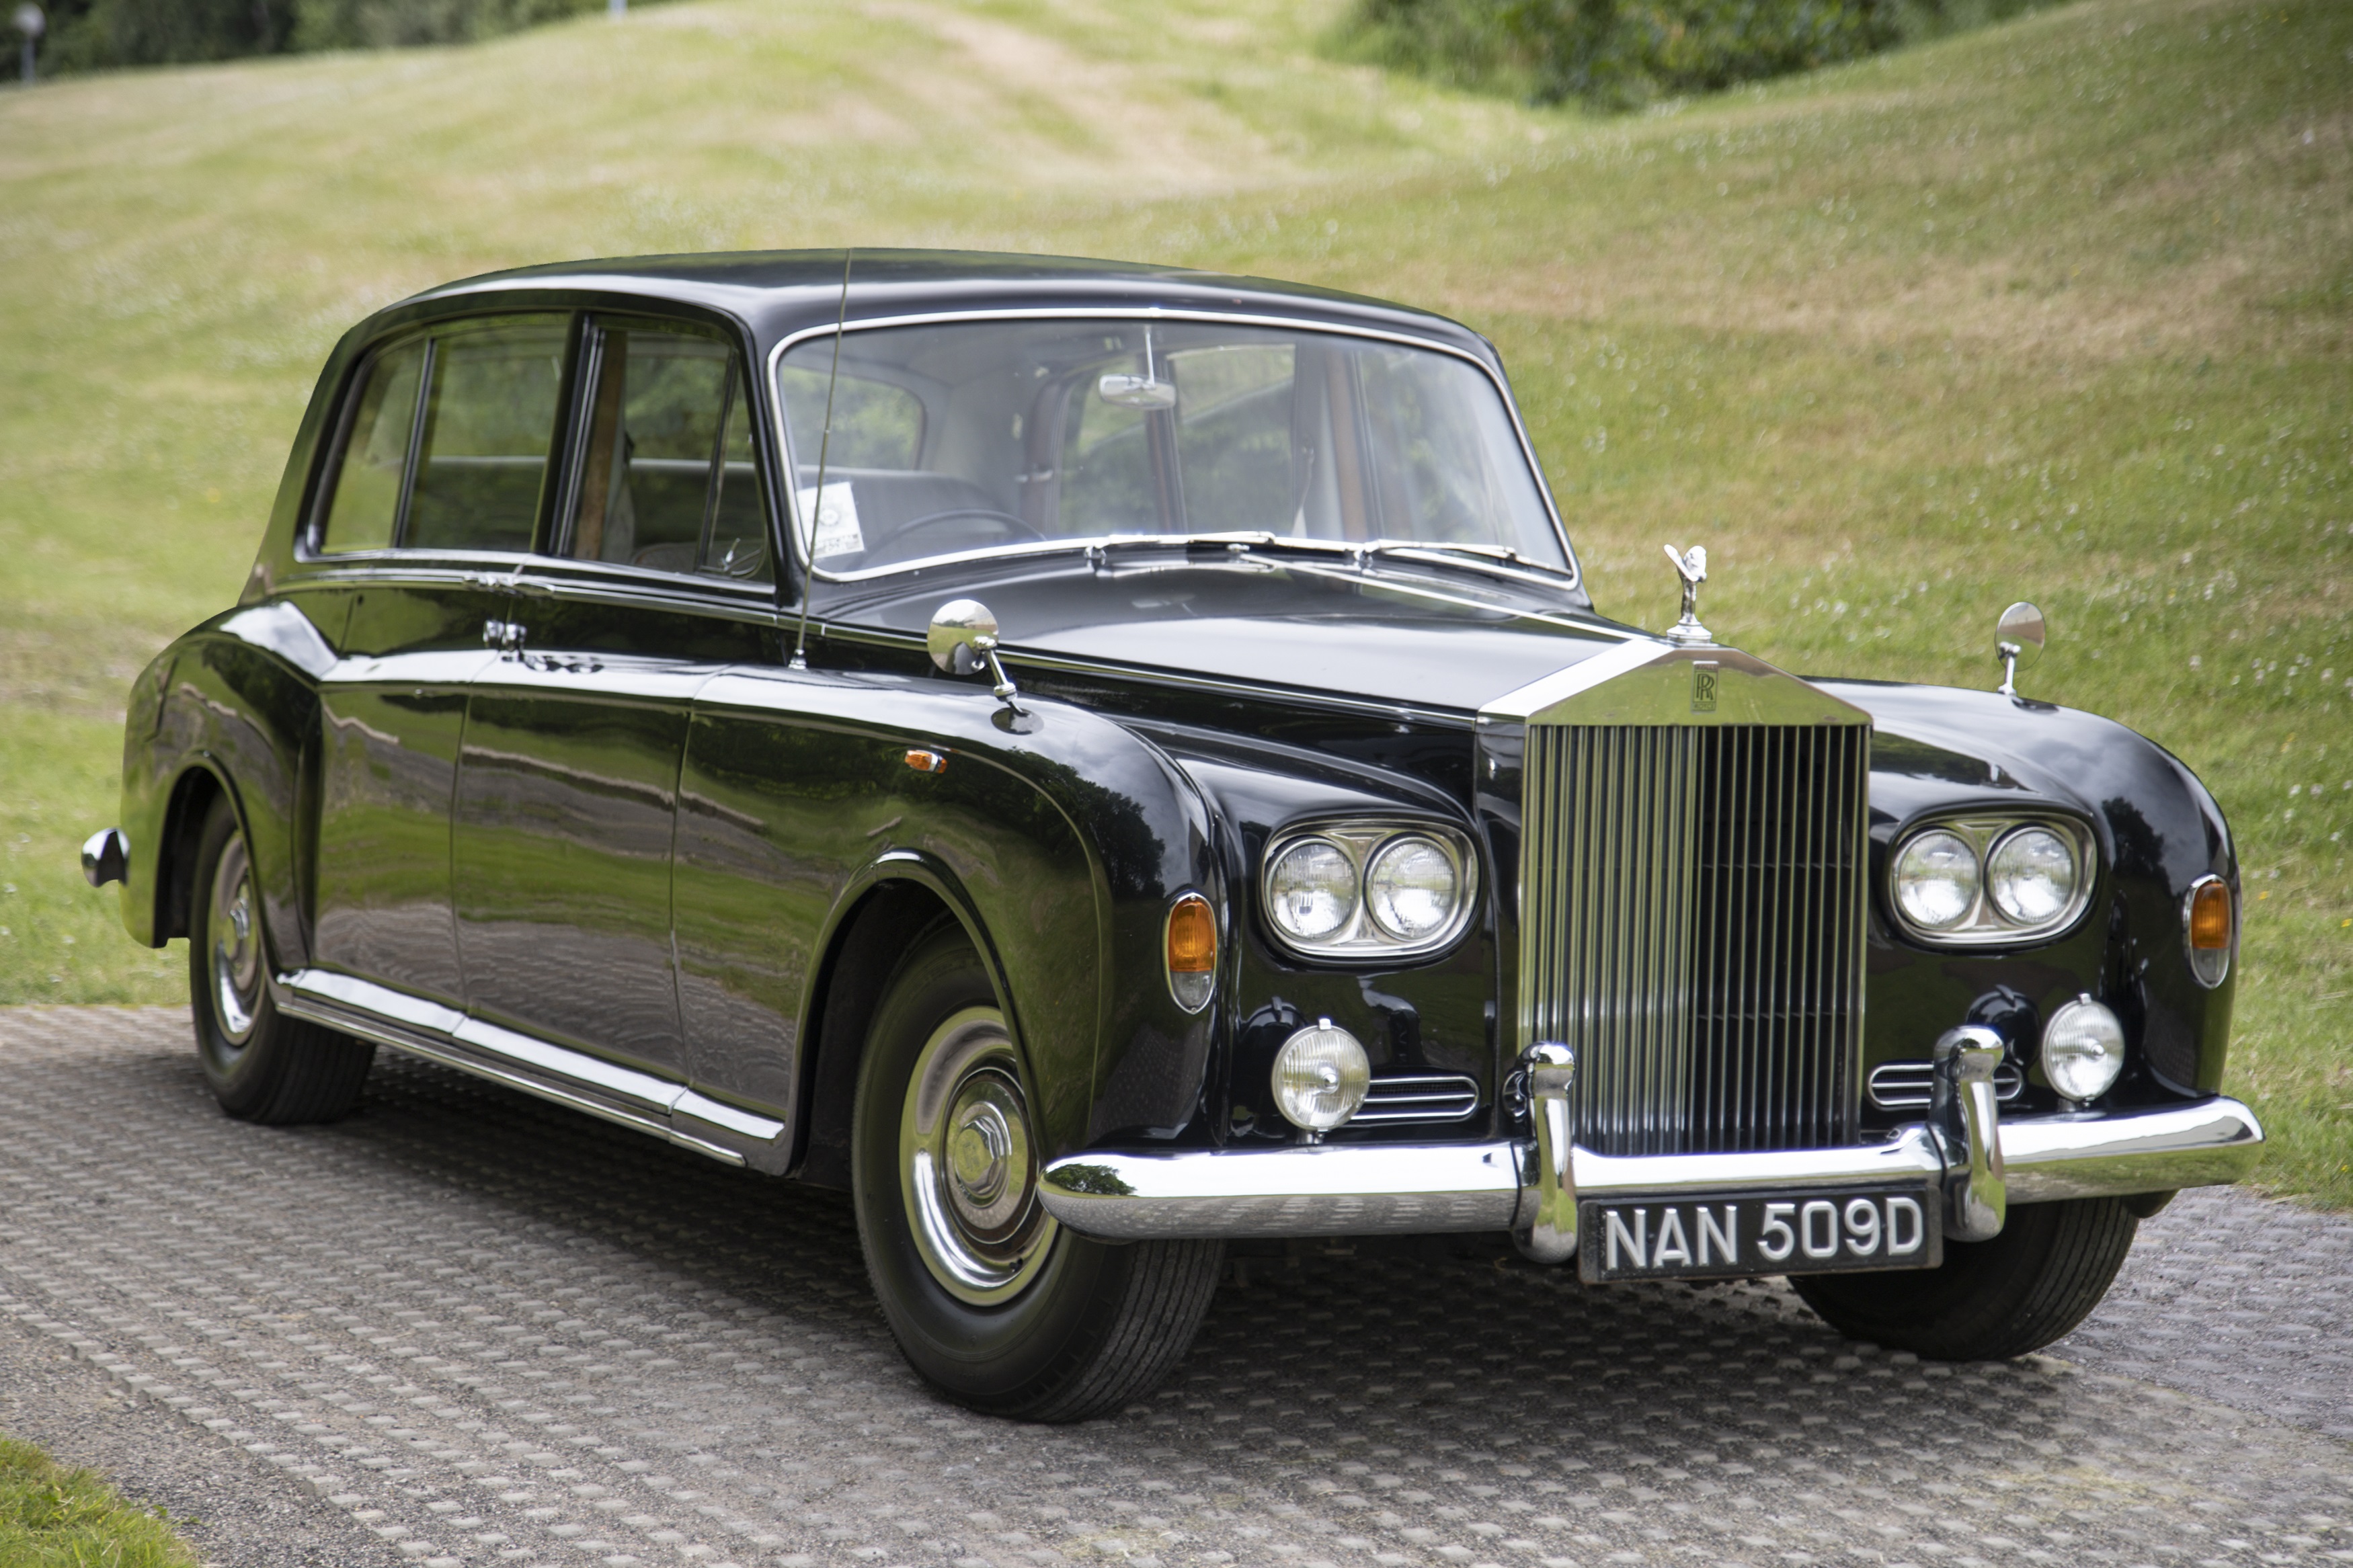 For Sale RollsRoyce Phantom V 1963 offered for 130000